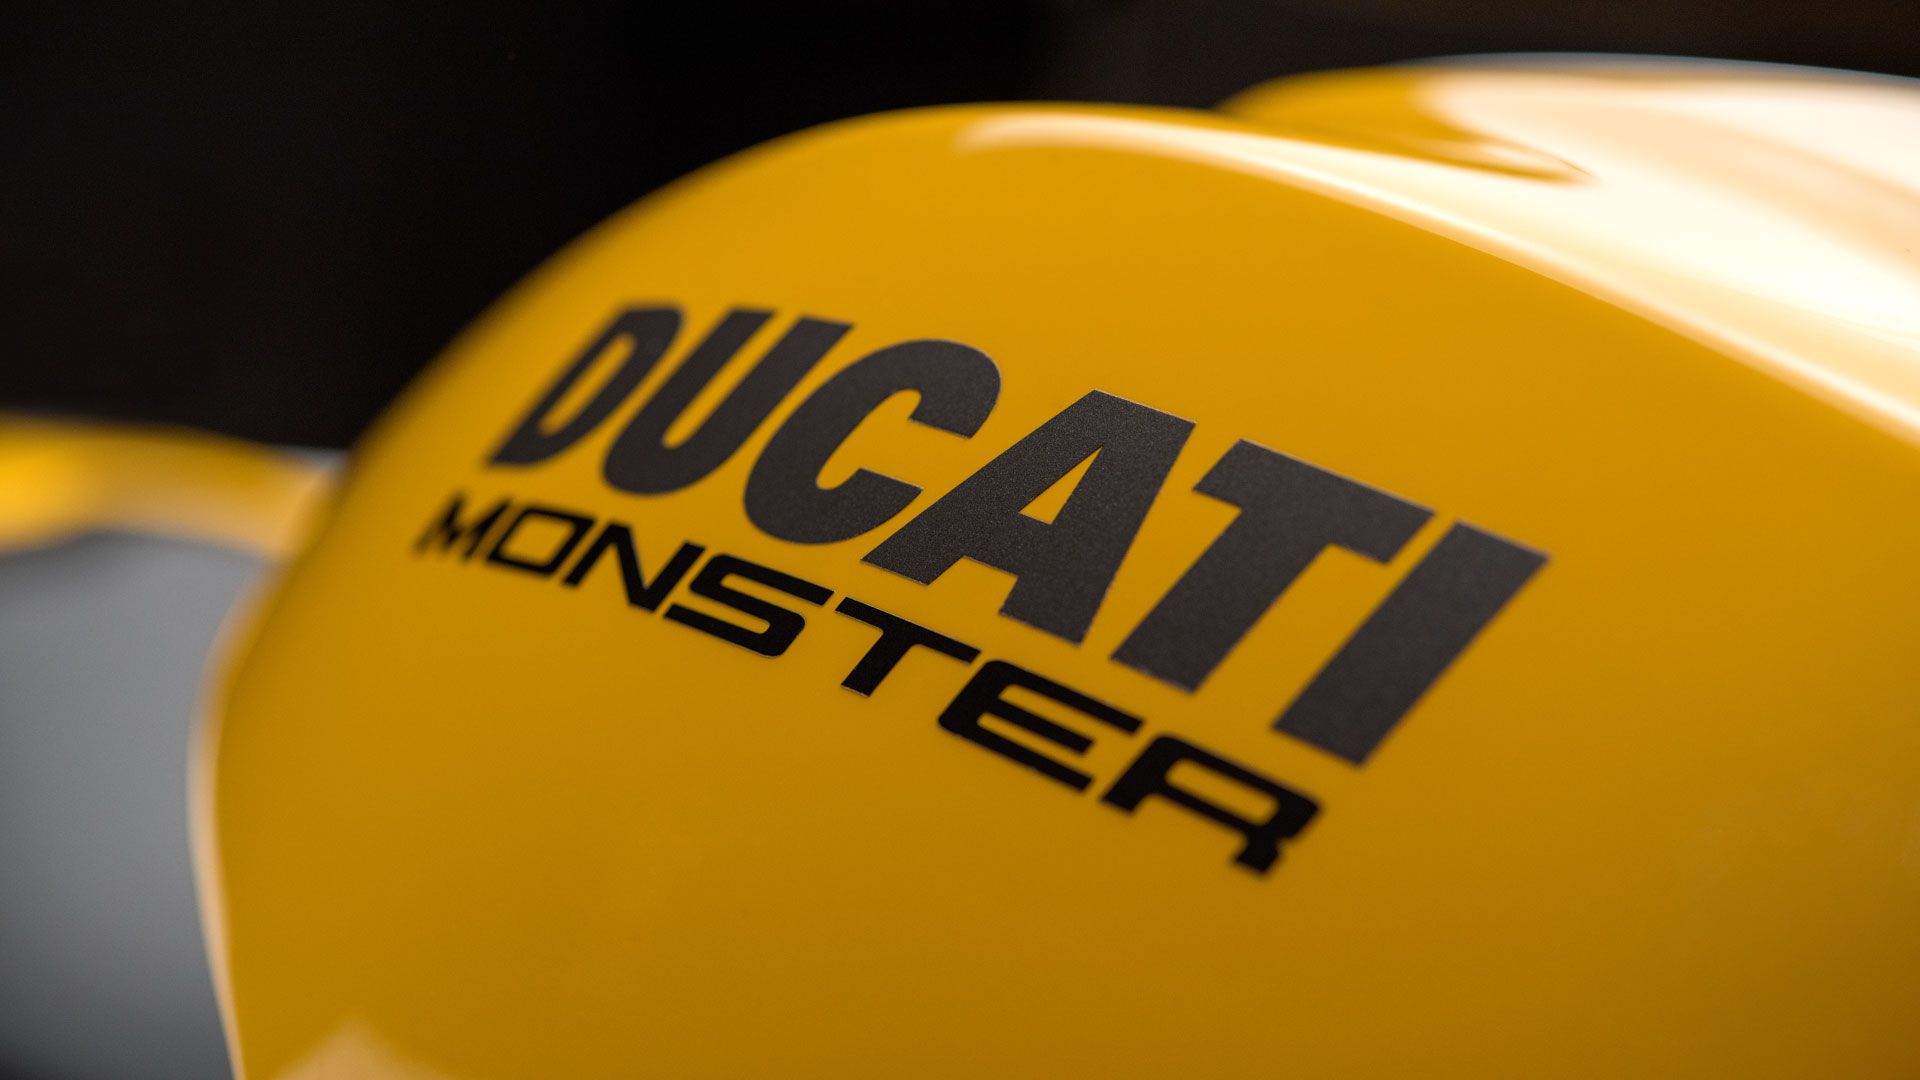 2018 - 2020 Ducati Monster 821